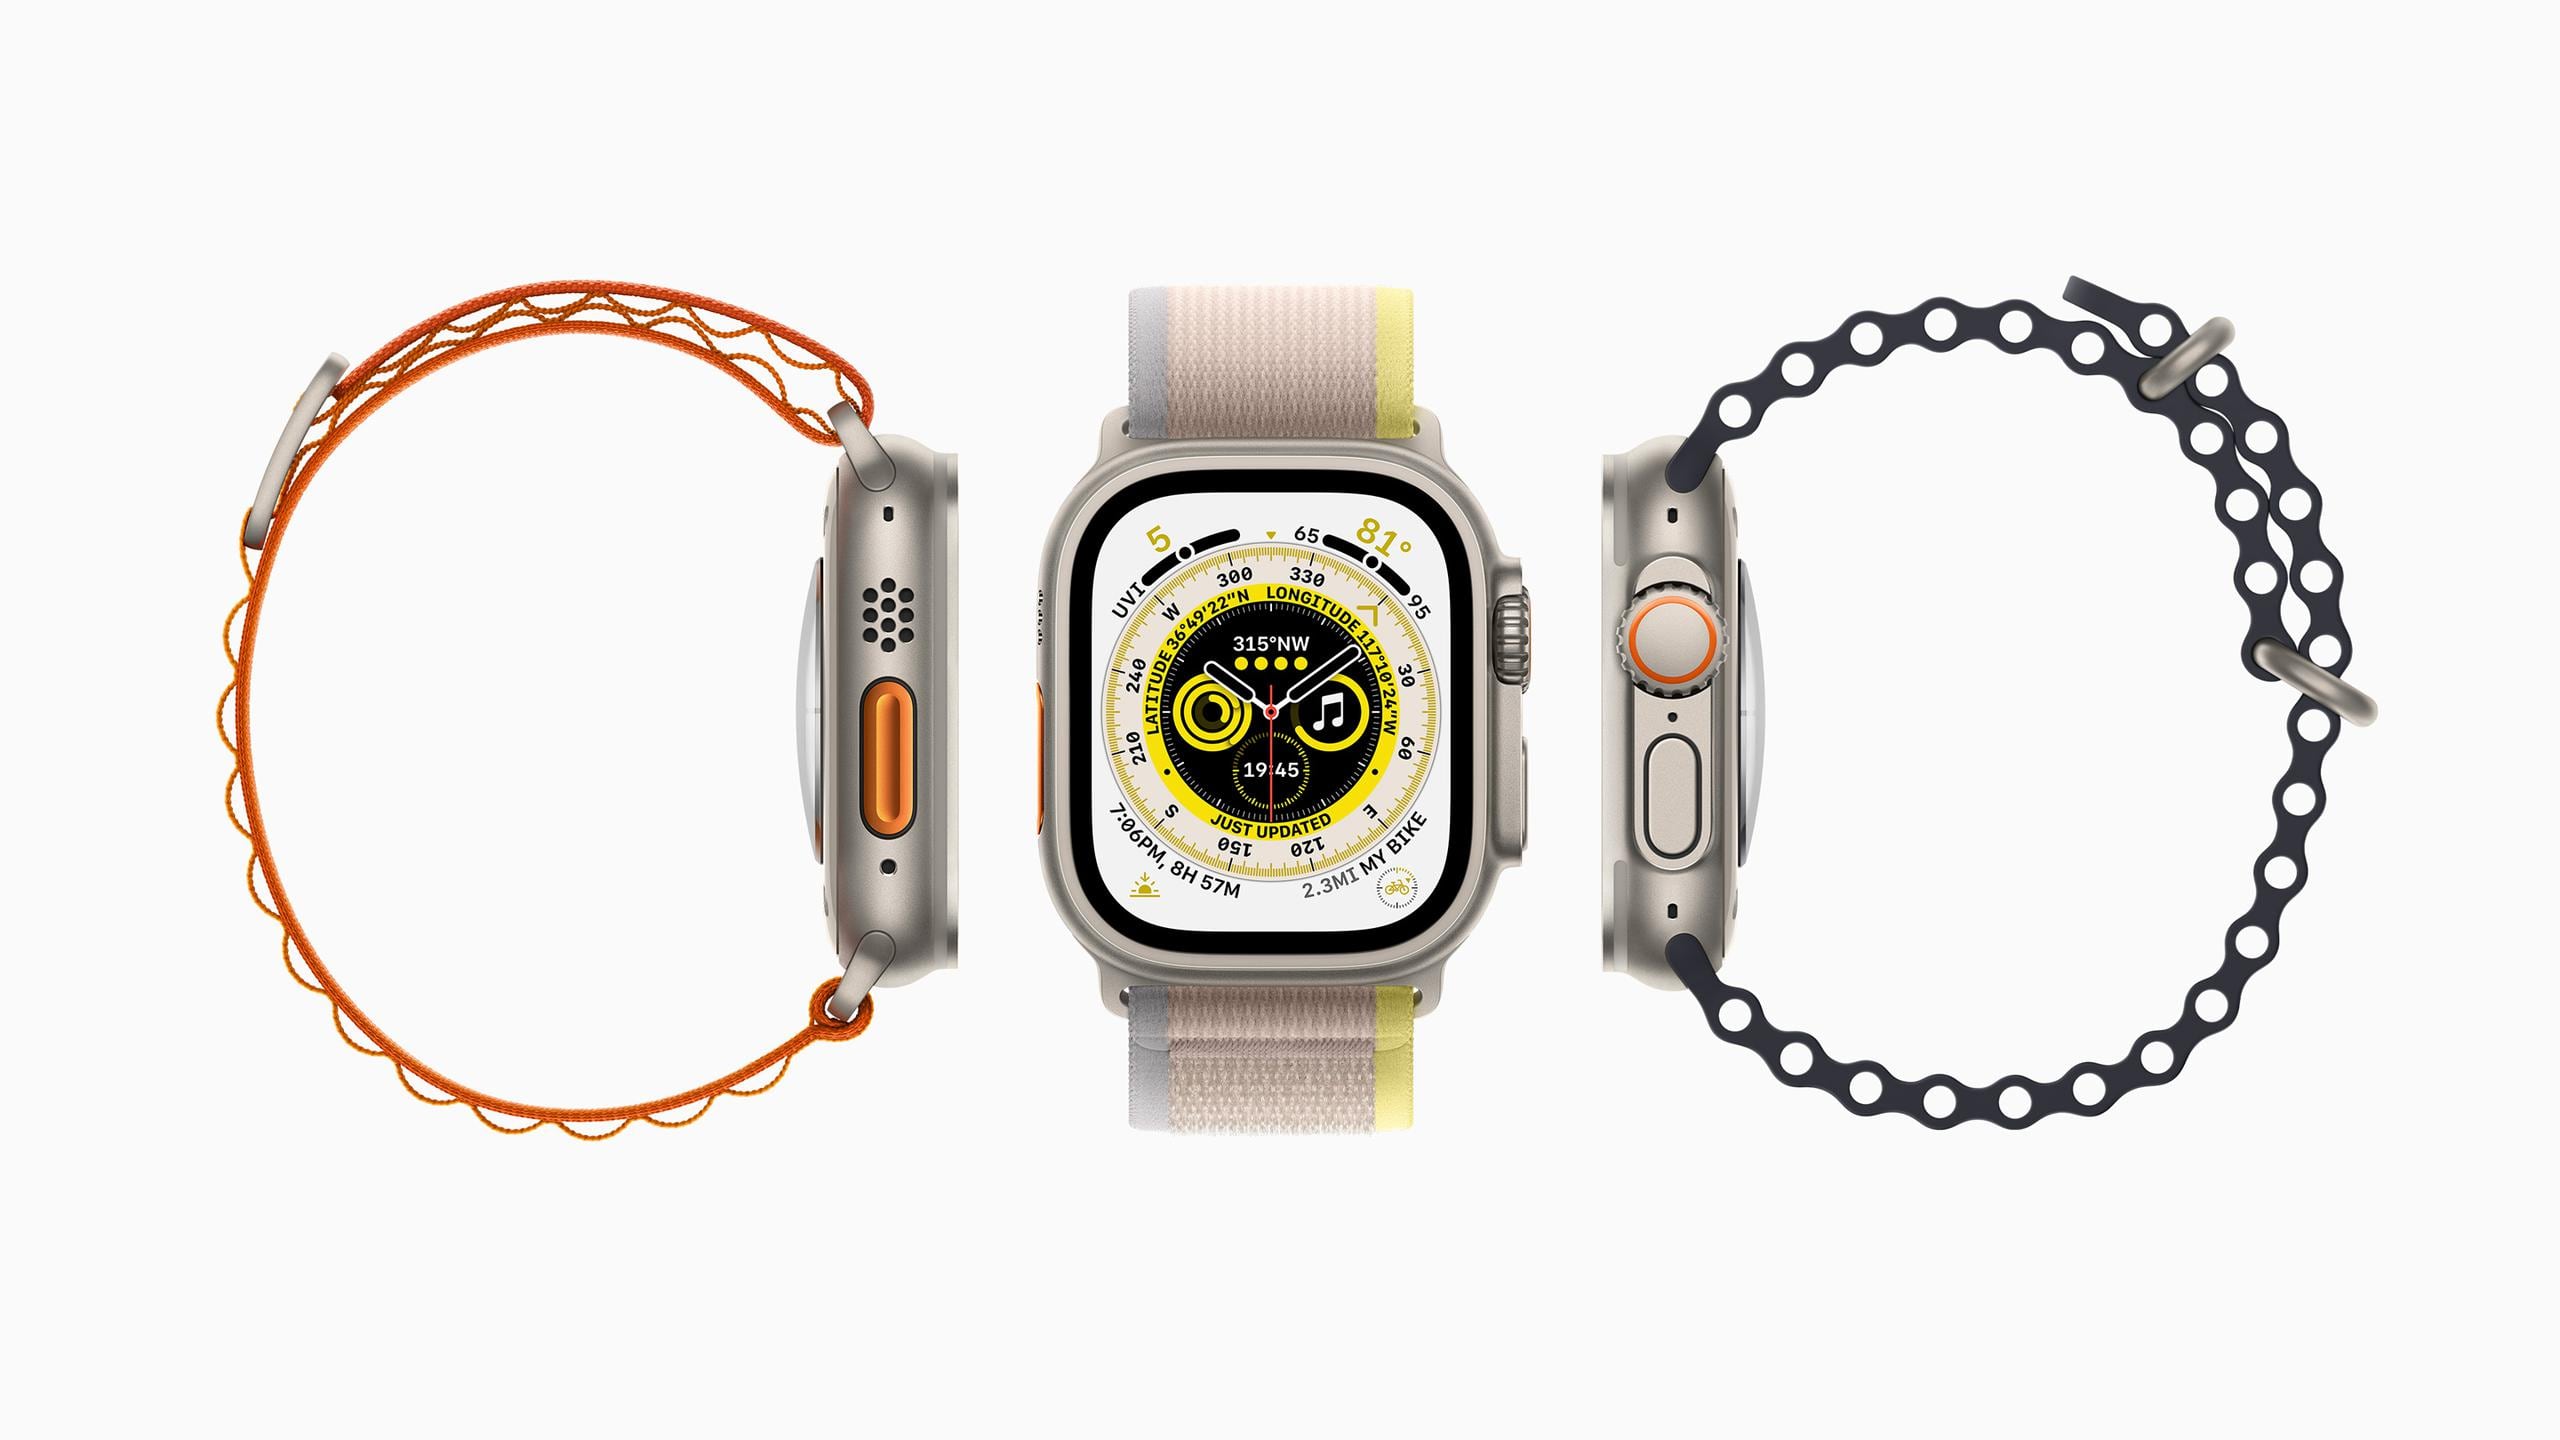 La empresa anunció un reloj de gama alta, el Apple Watch Ultra, con pantalla todavía más grande, un precio de $799 dólares y diseñado especialmente para deportes al aire libre como alpinismo, carreras de senderos y submarinismo.